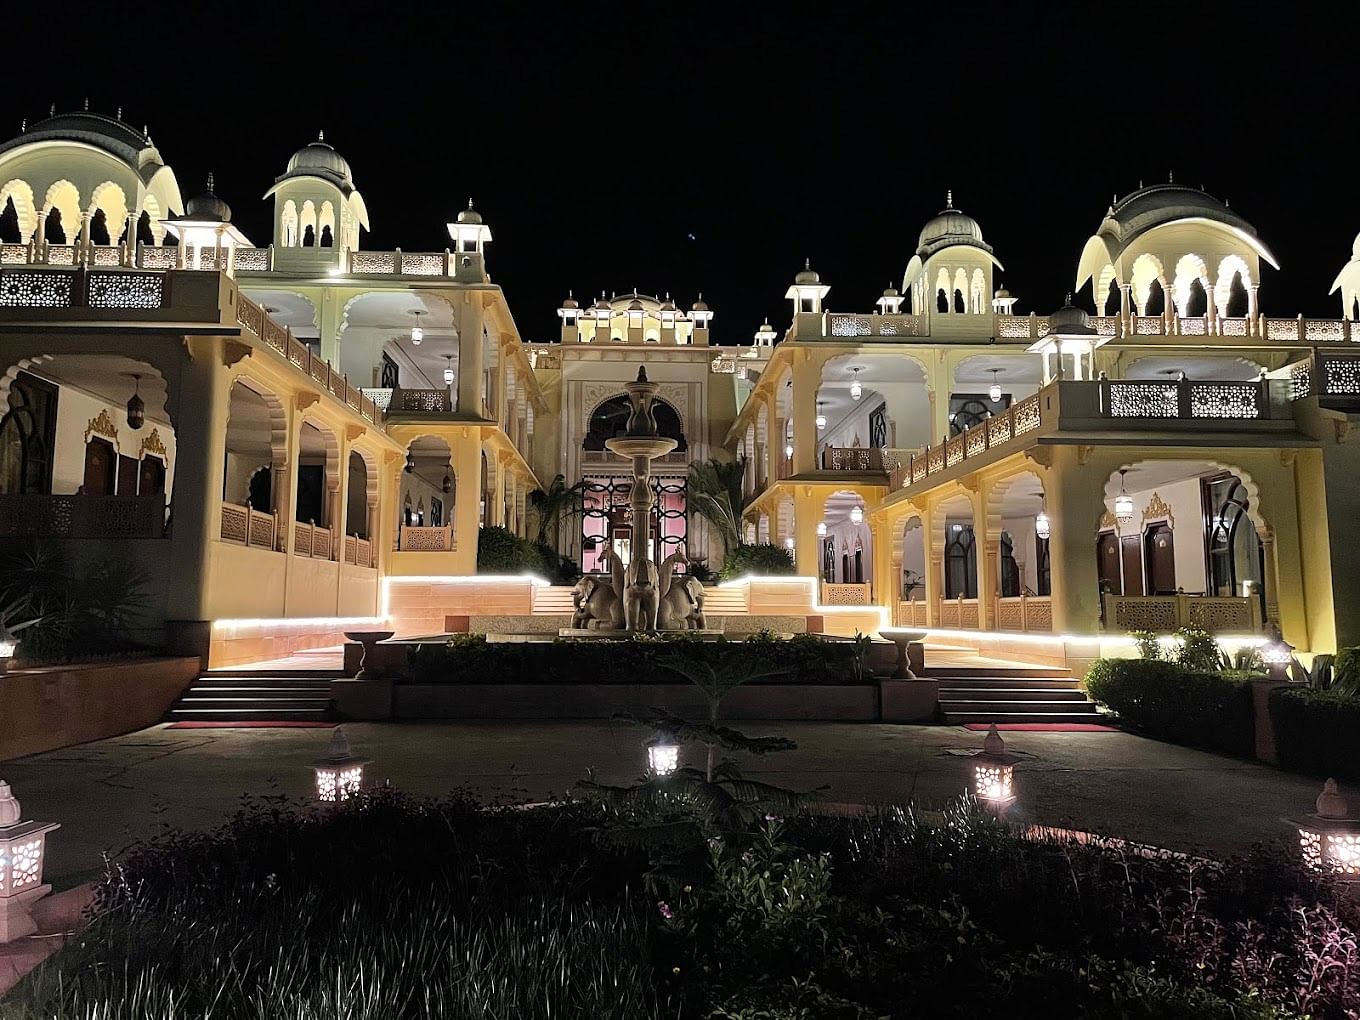 Rajasthali Resort Spa in Kukas, Jaipur